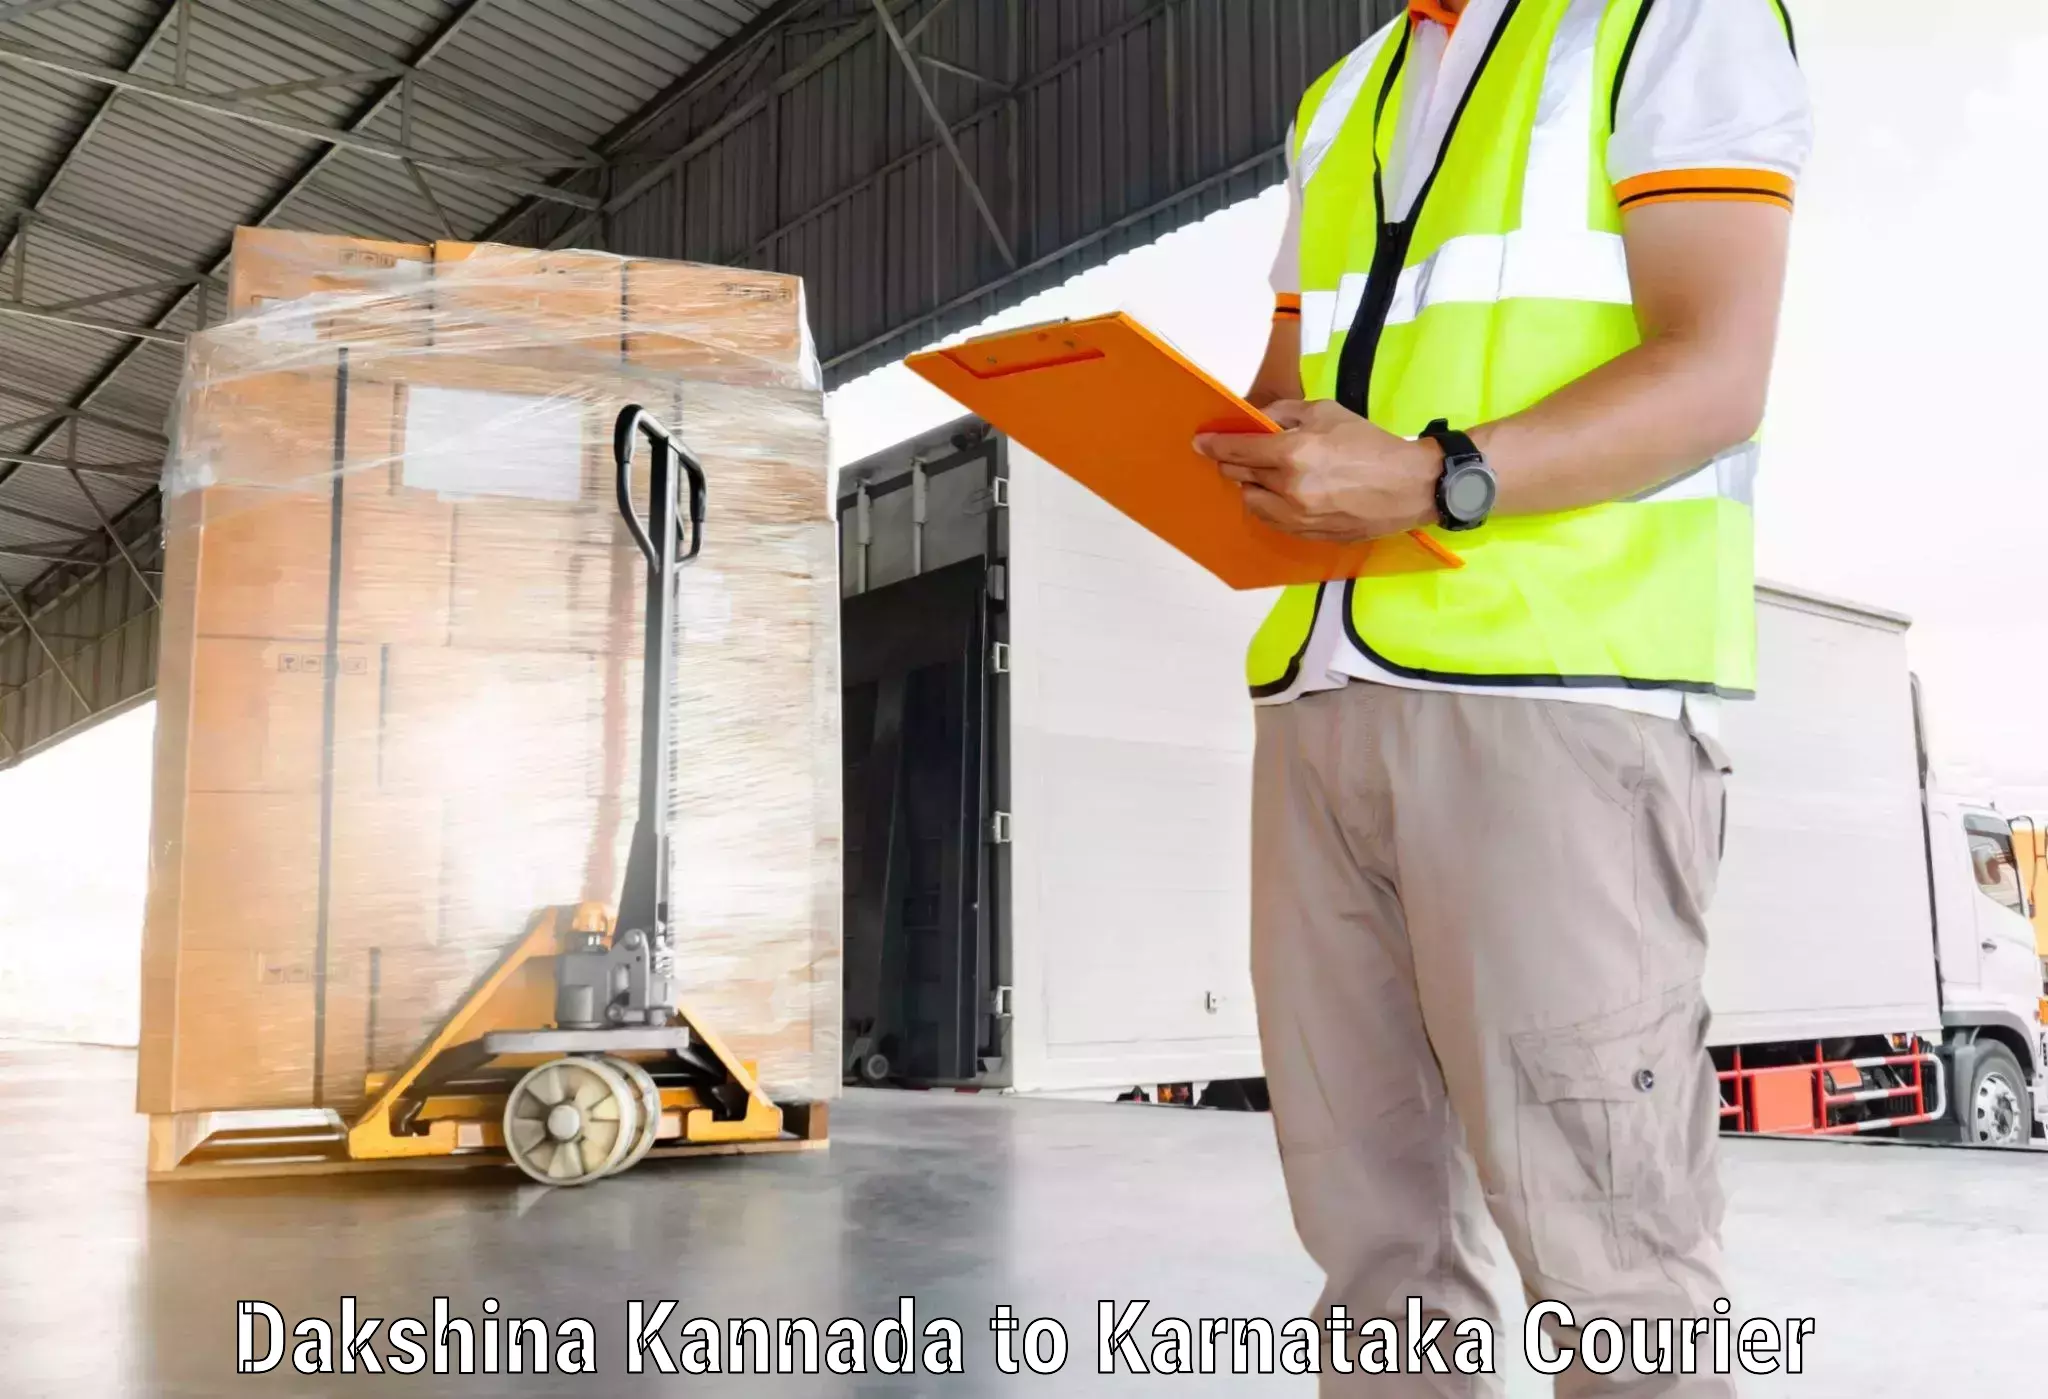 Courier service comparison in Dakshina Kannada to Shanivarasanthe